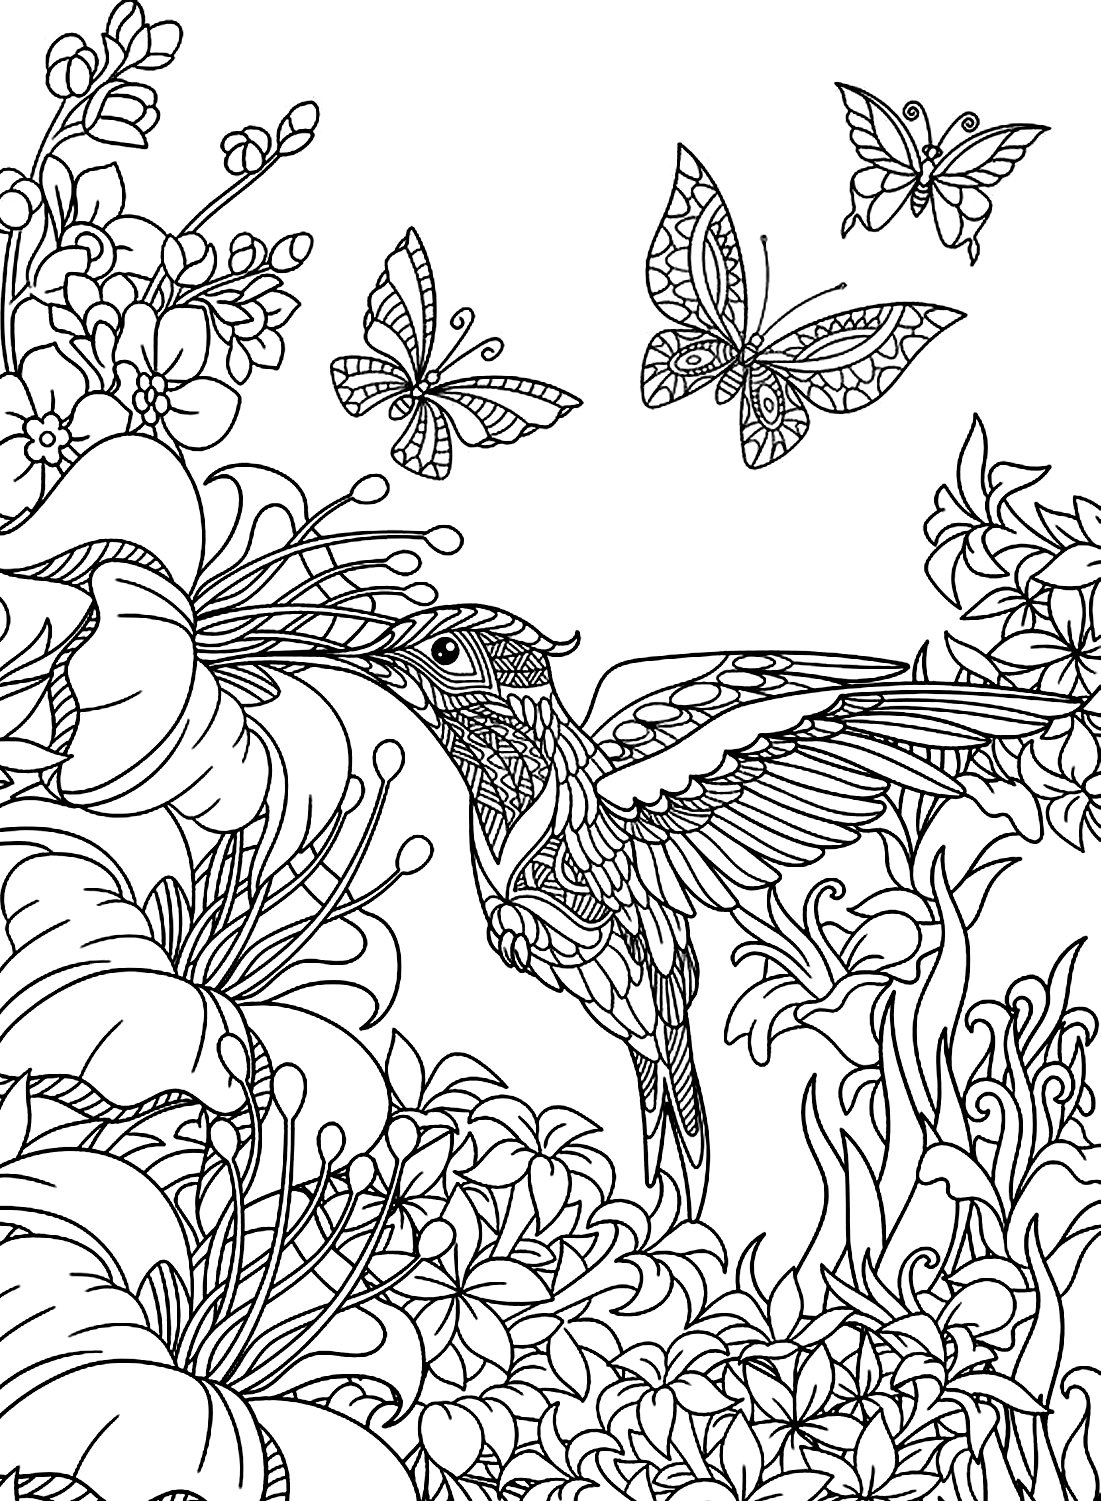 Image couleur d’un colibri d’art de Colibri